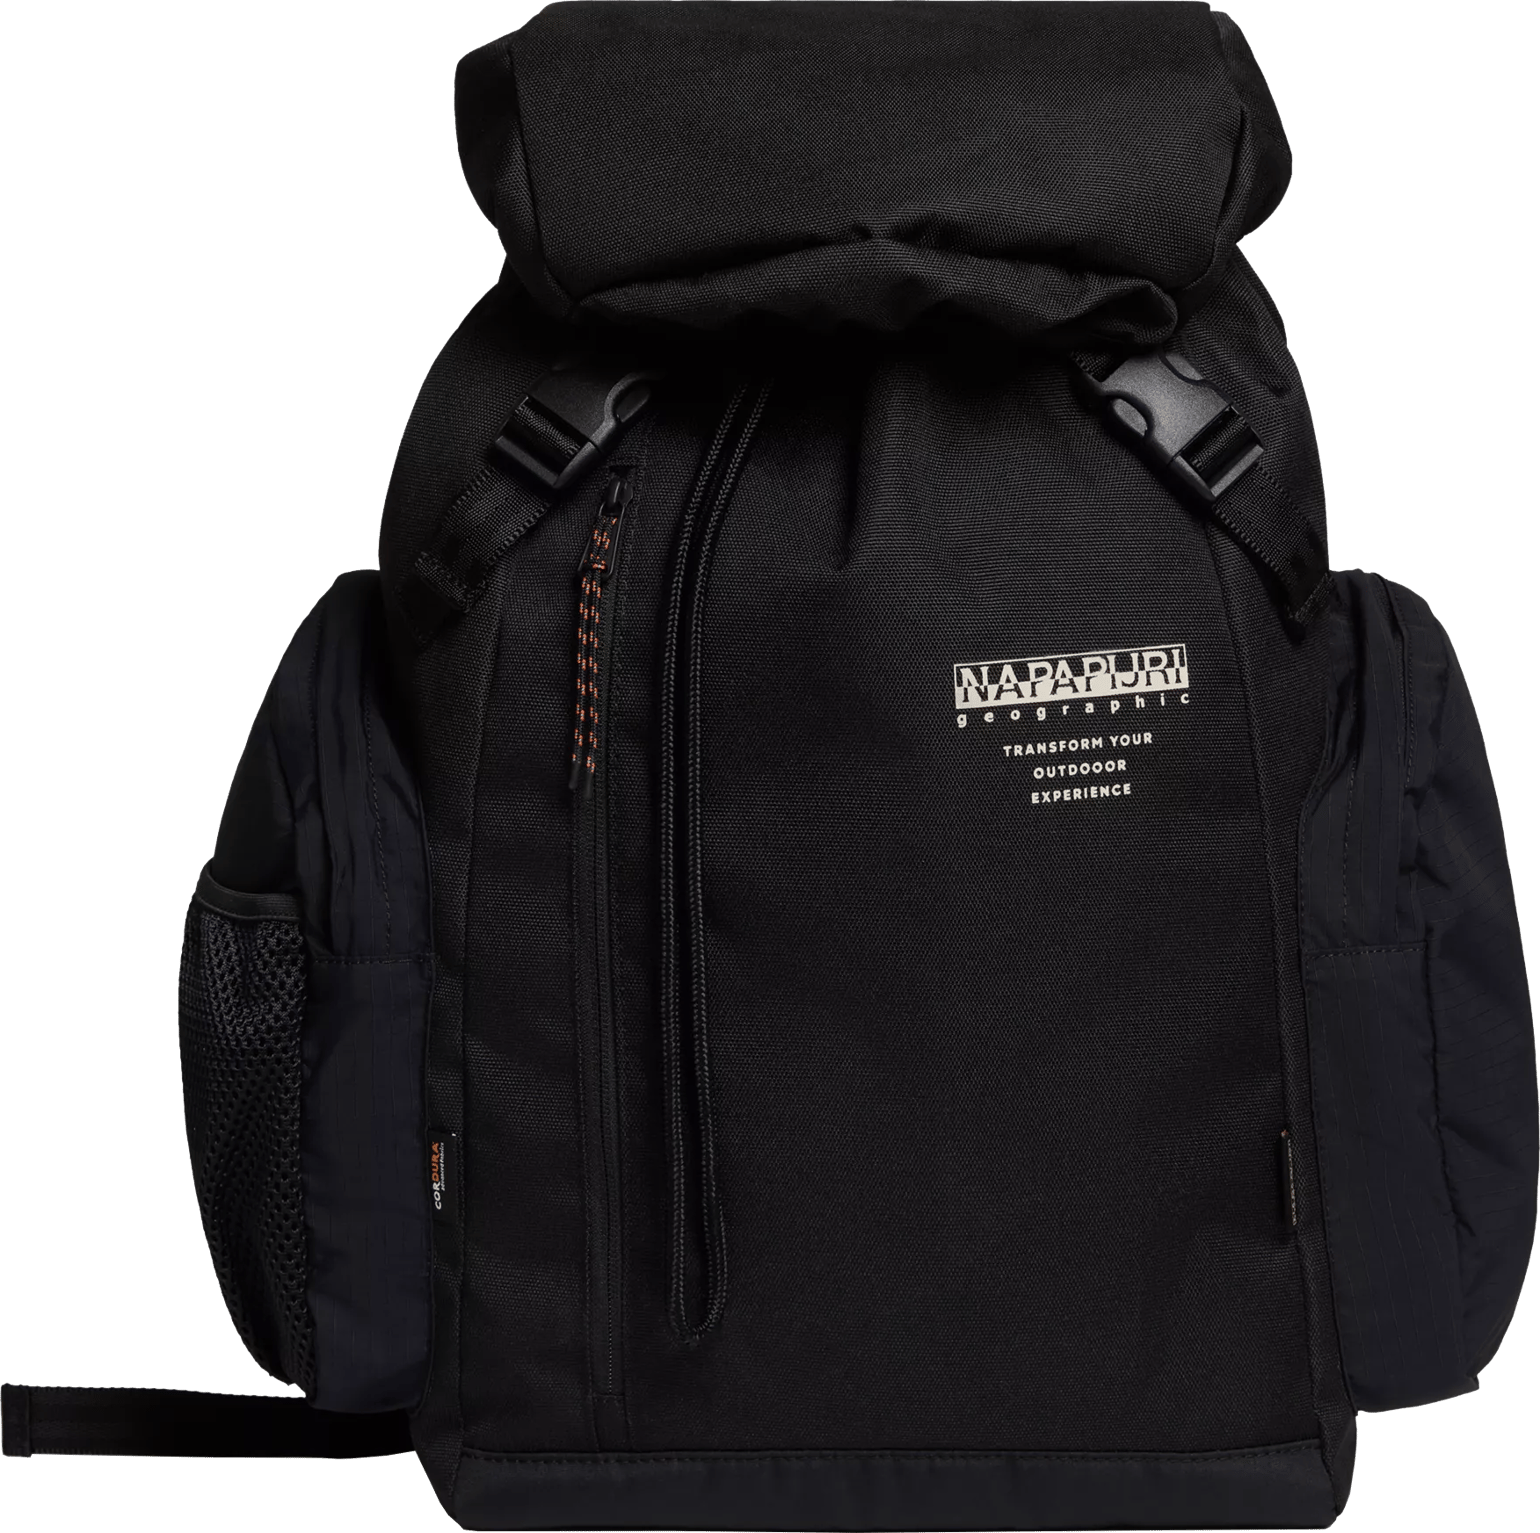 Napapijri Lynx Backpack Black